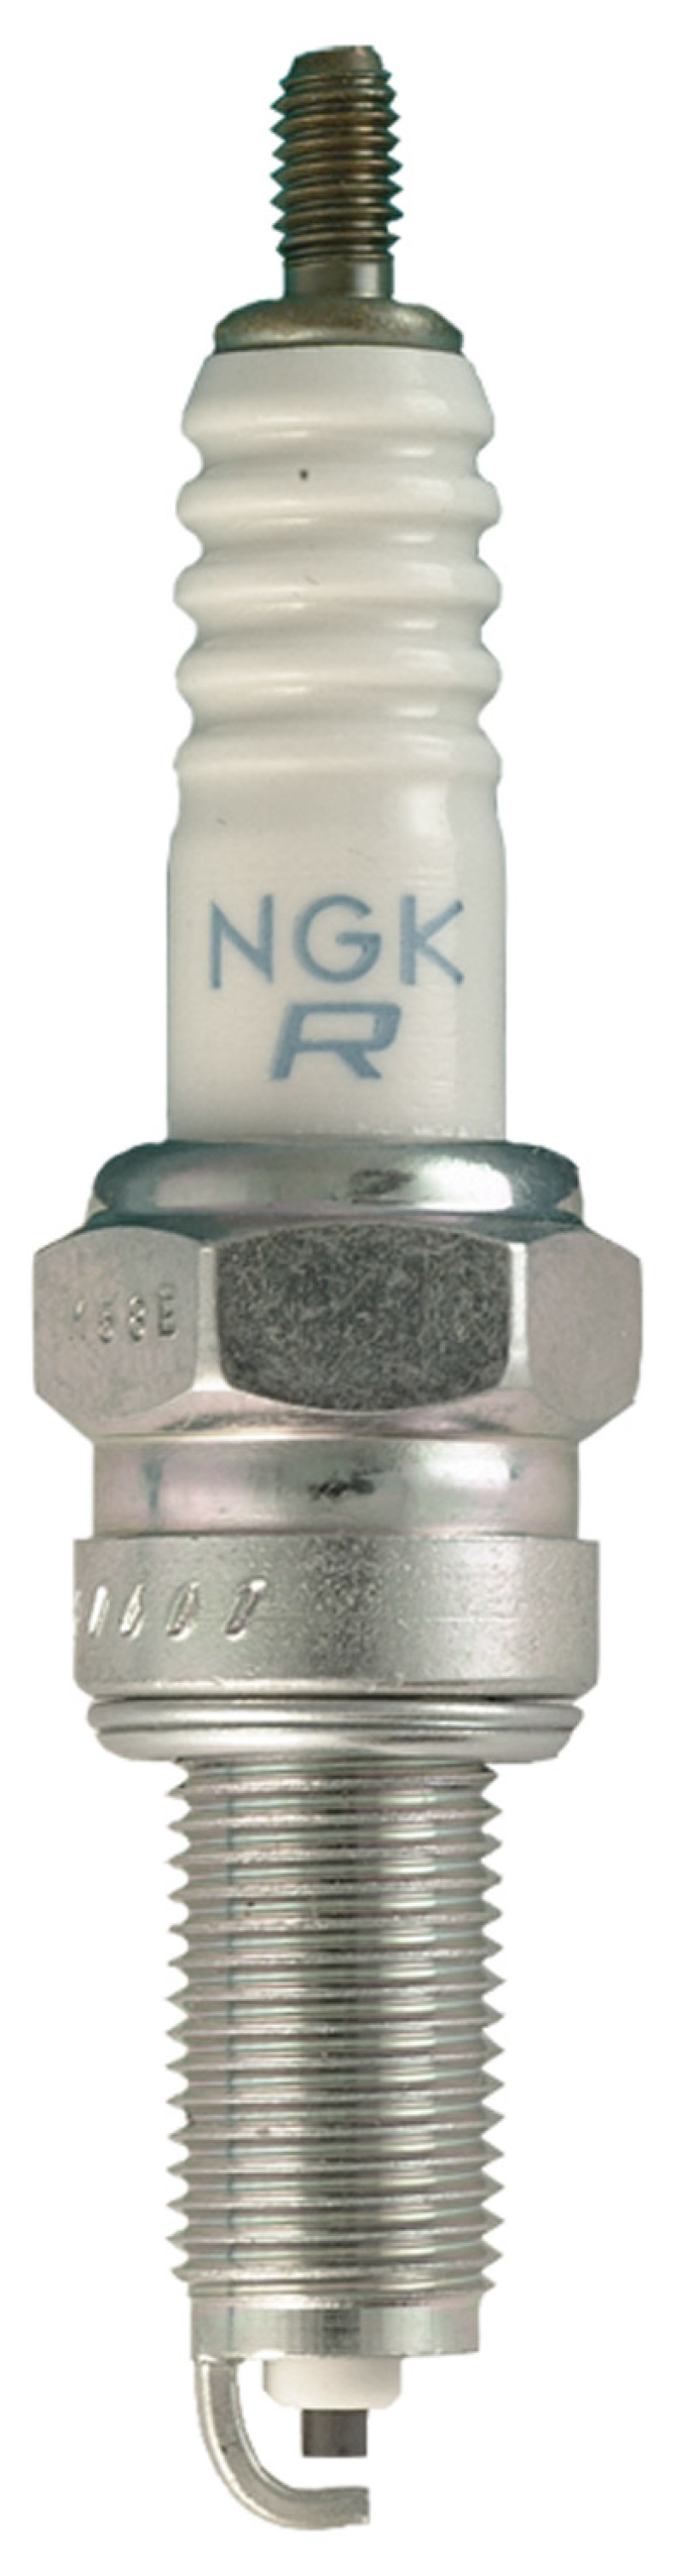 NGK Standard Spark Plug Box of 4 (CPR7EA-9) - 3901